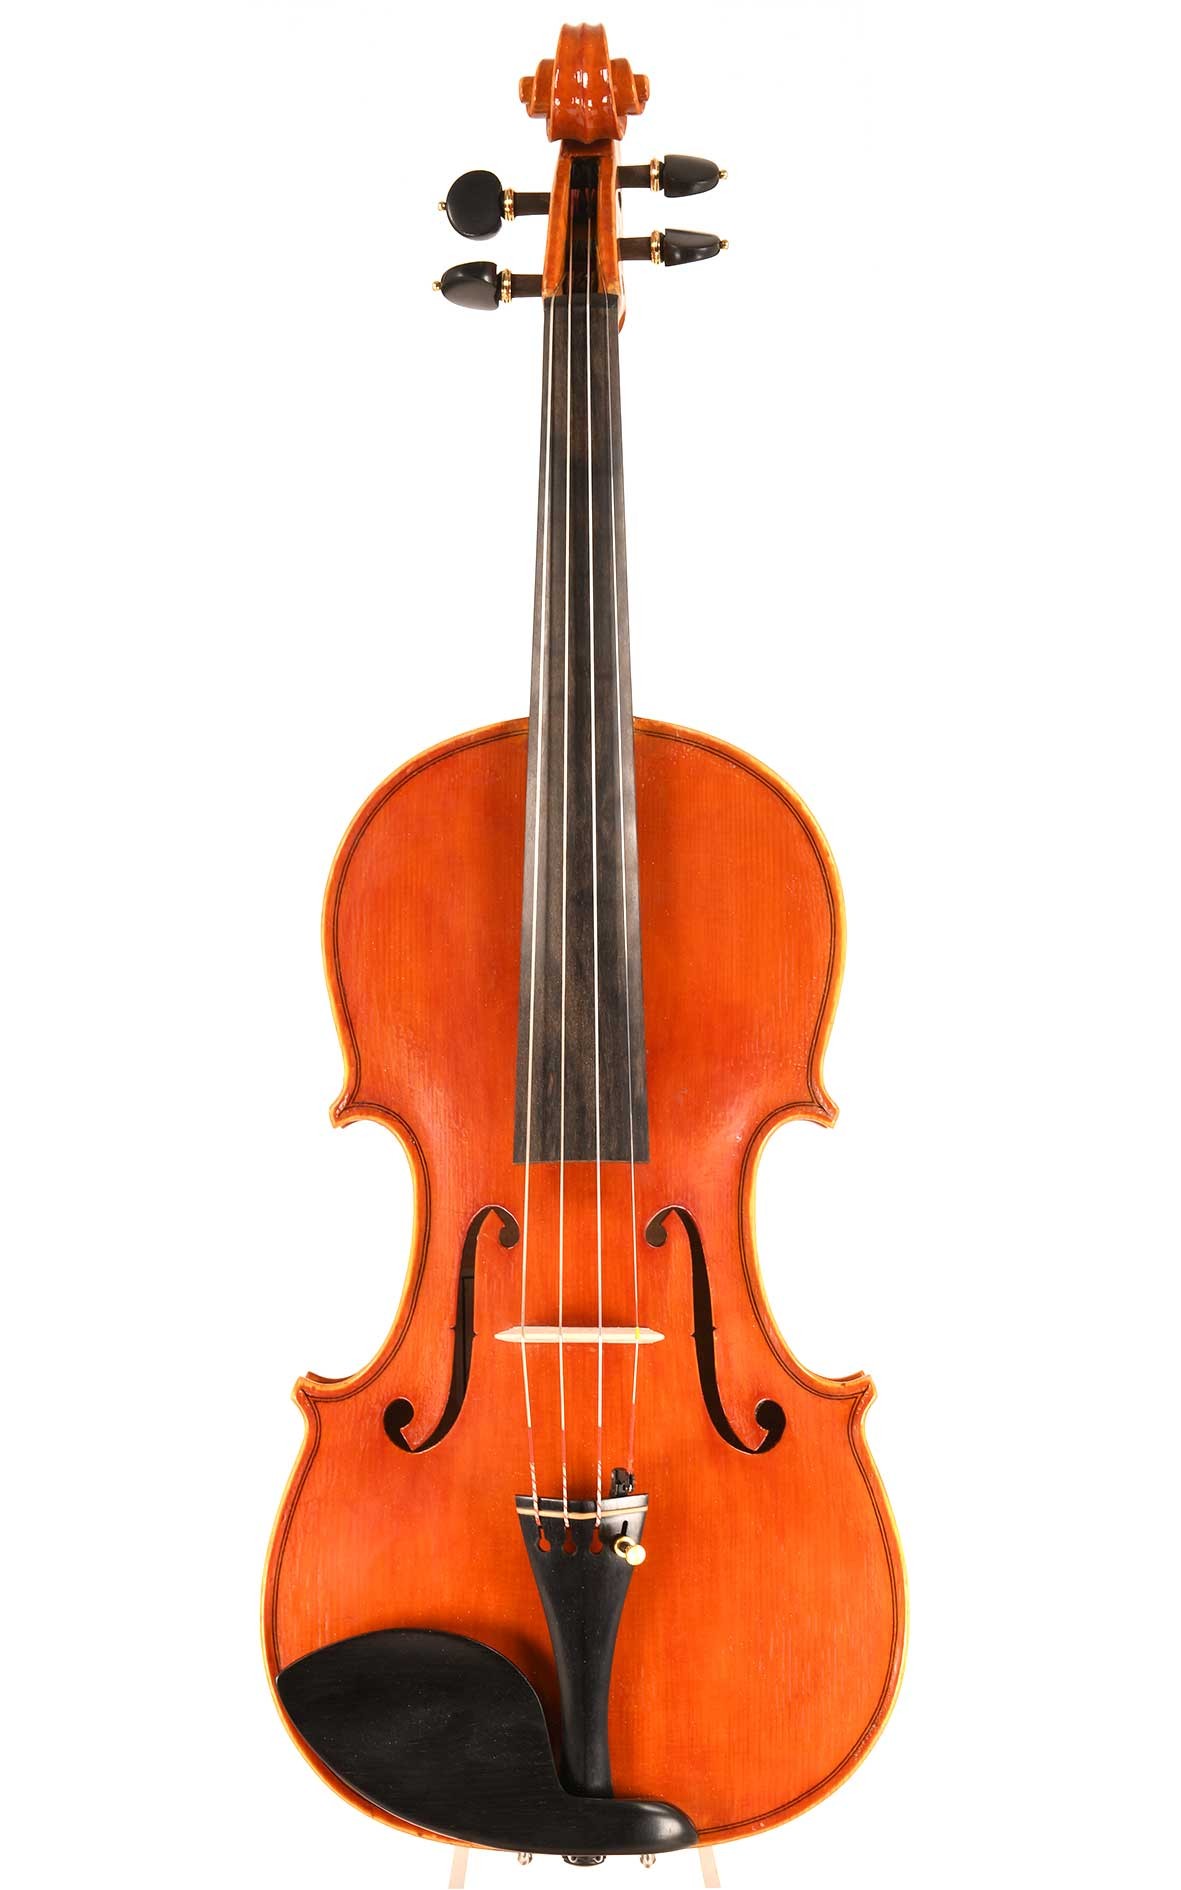 Marco Venturi violin